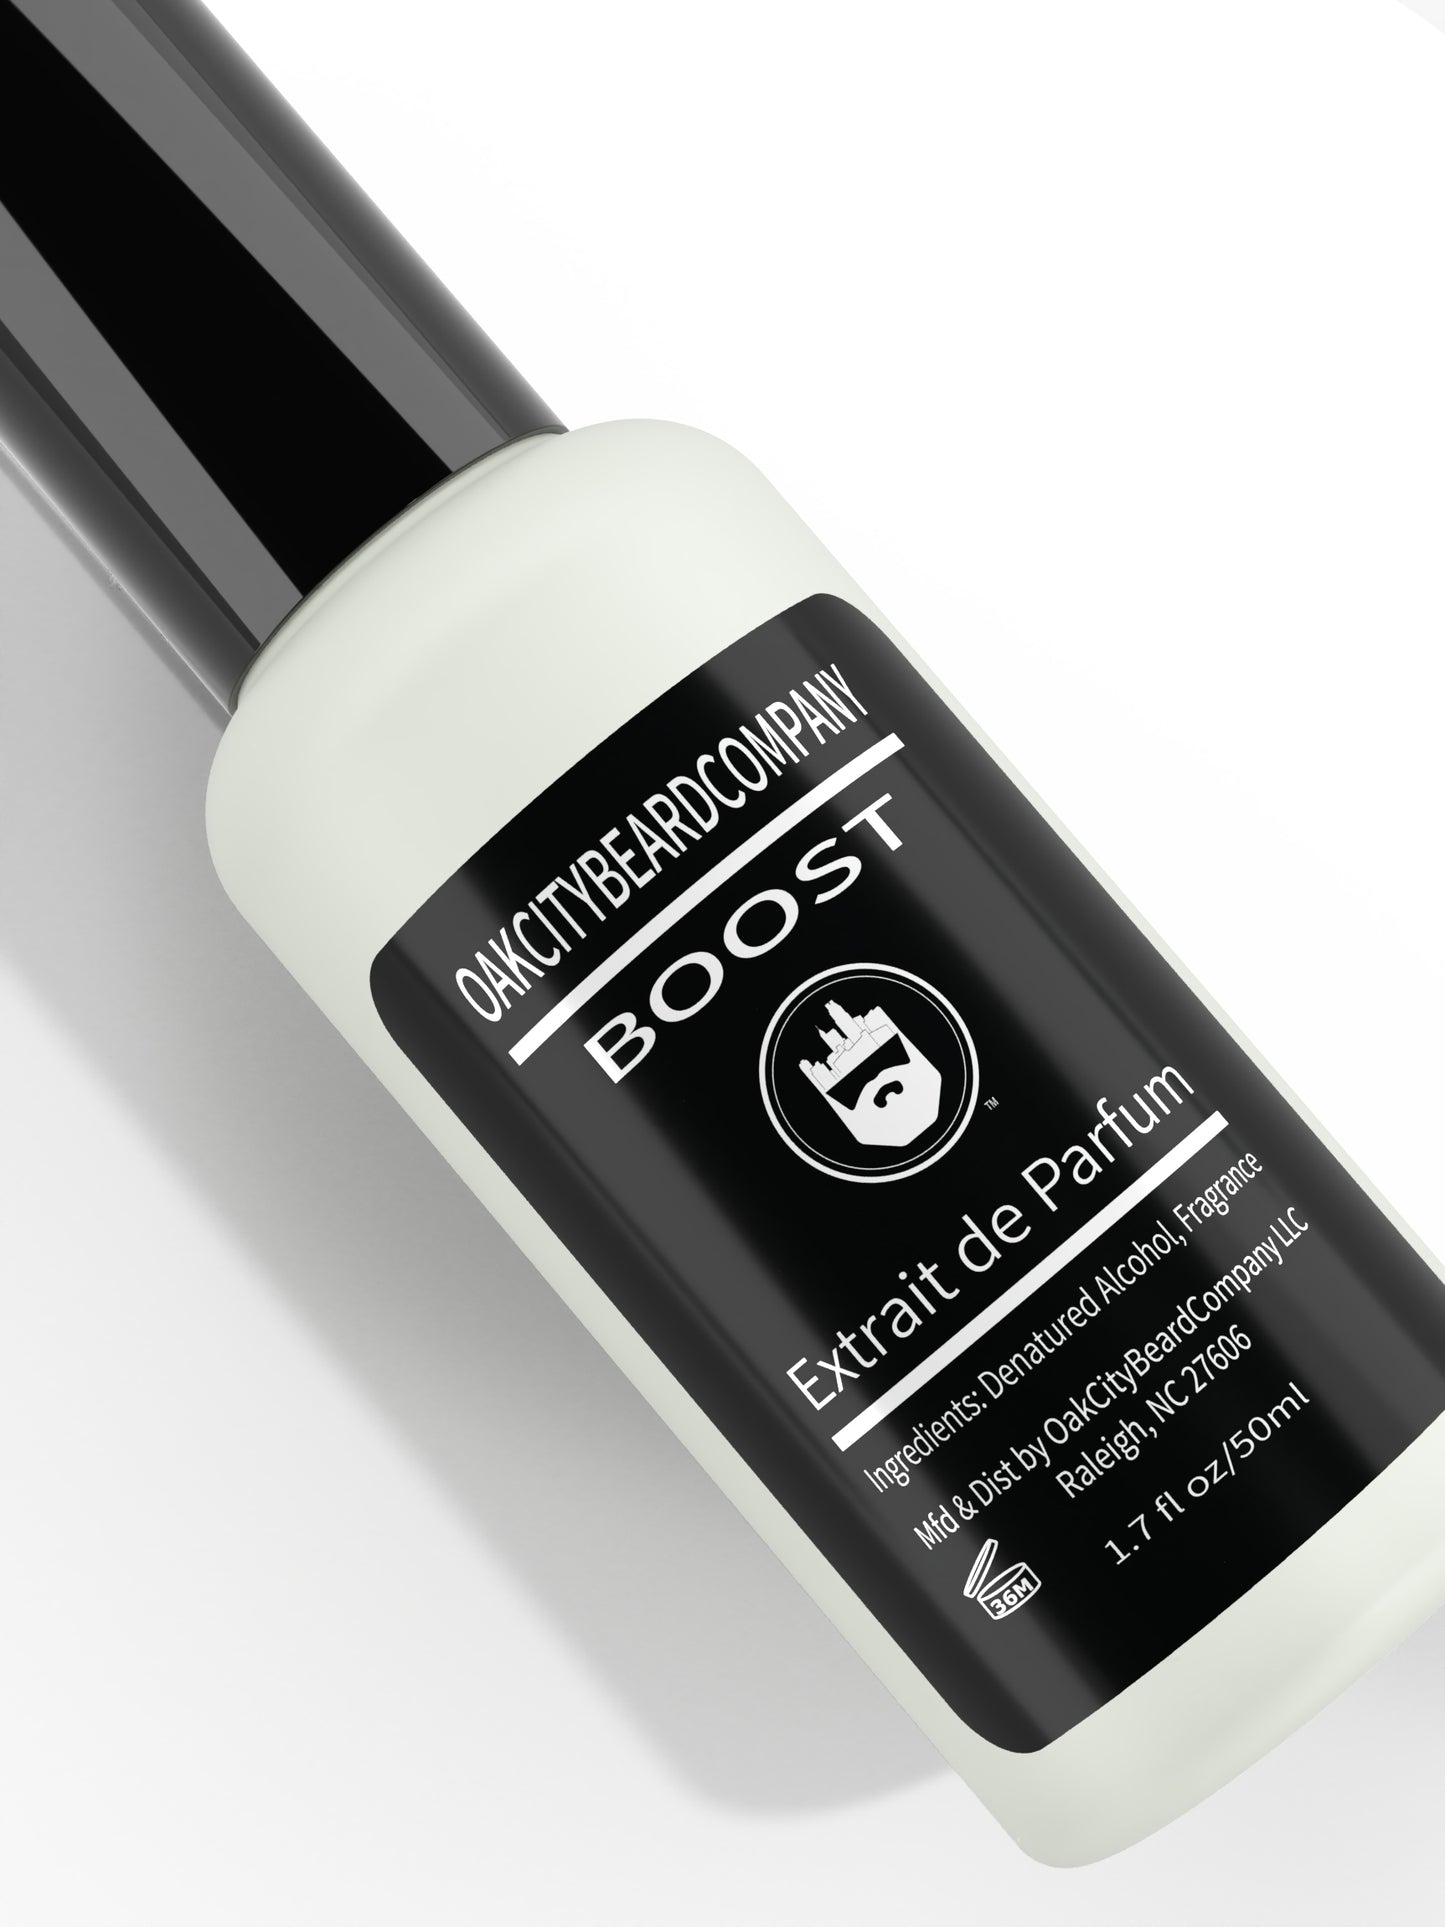 Boost (Cologne) Extrait de Parfum by Oak City Beard Company